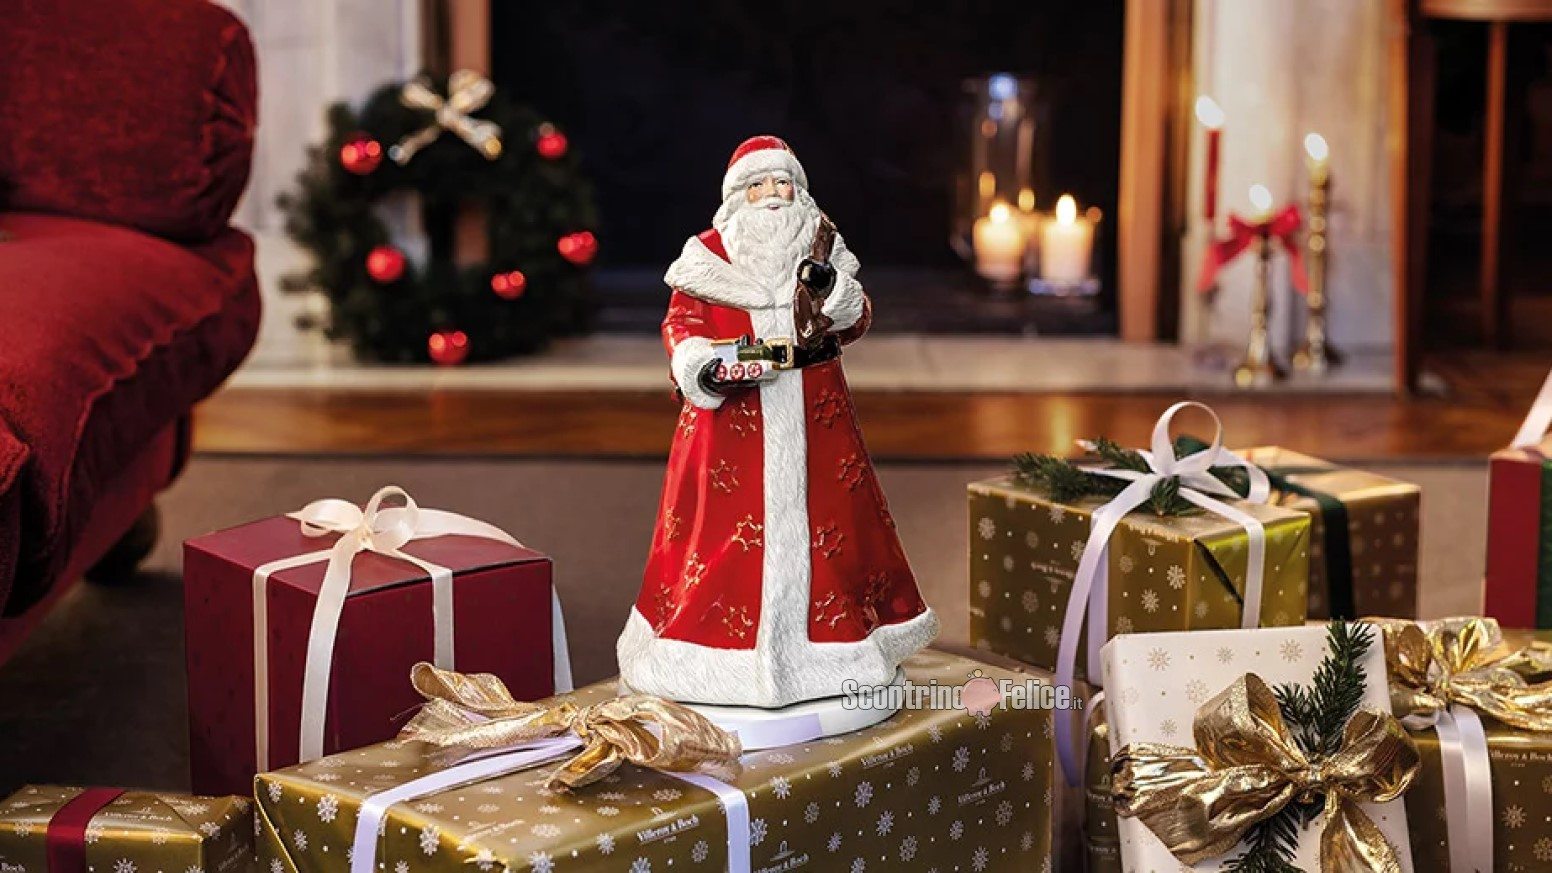 Grande Concorso di Natale 2021 Villeroy & Boch: vinci gratis carillon, trenino e tazze natalizie